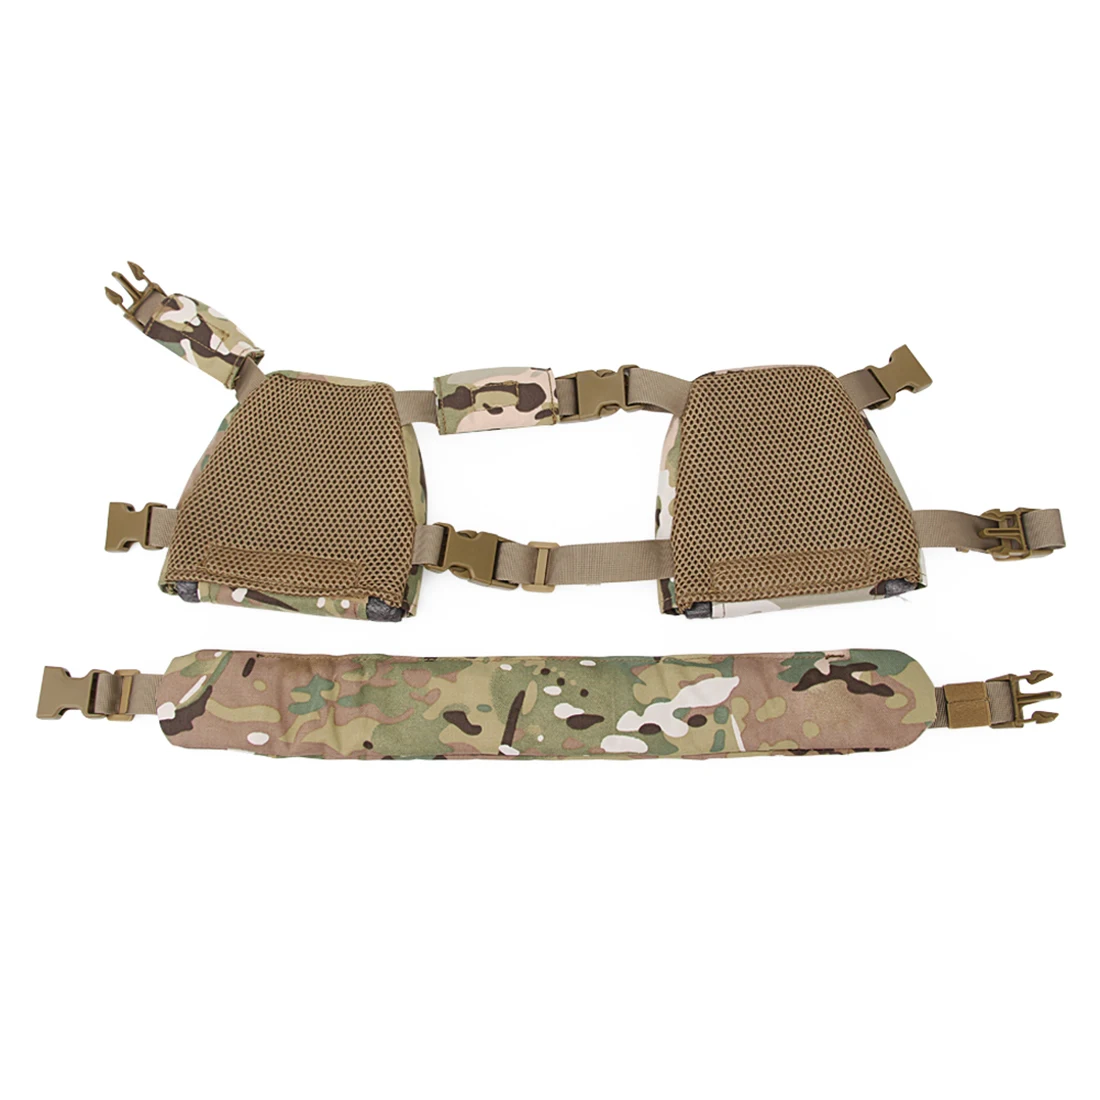 Surwish дети Военная тактика рюкзак оборудование и ремень Костюм для Nerf/для страйкбола/для WG игры на открытом воздухе-S